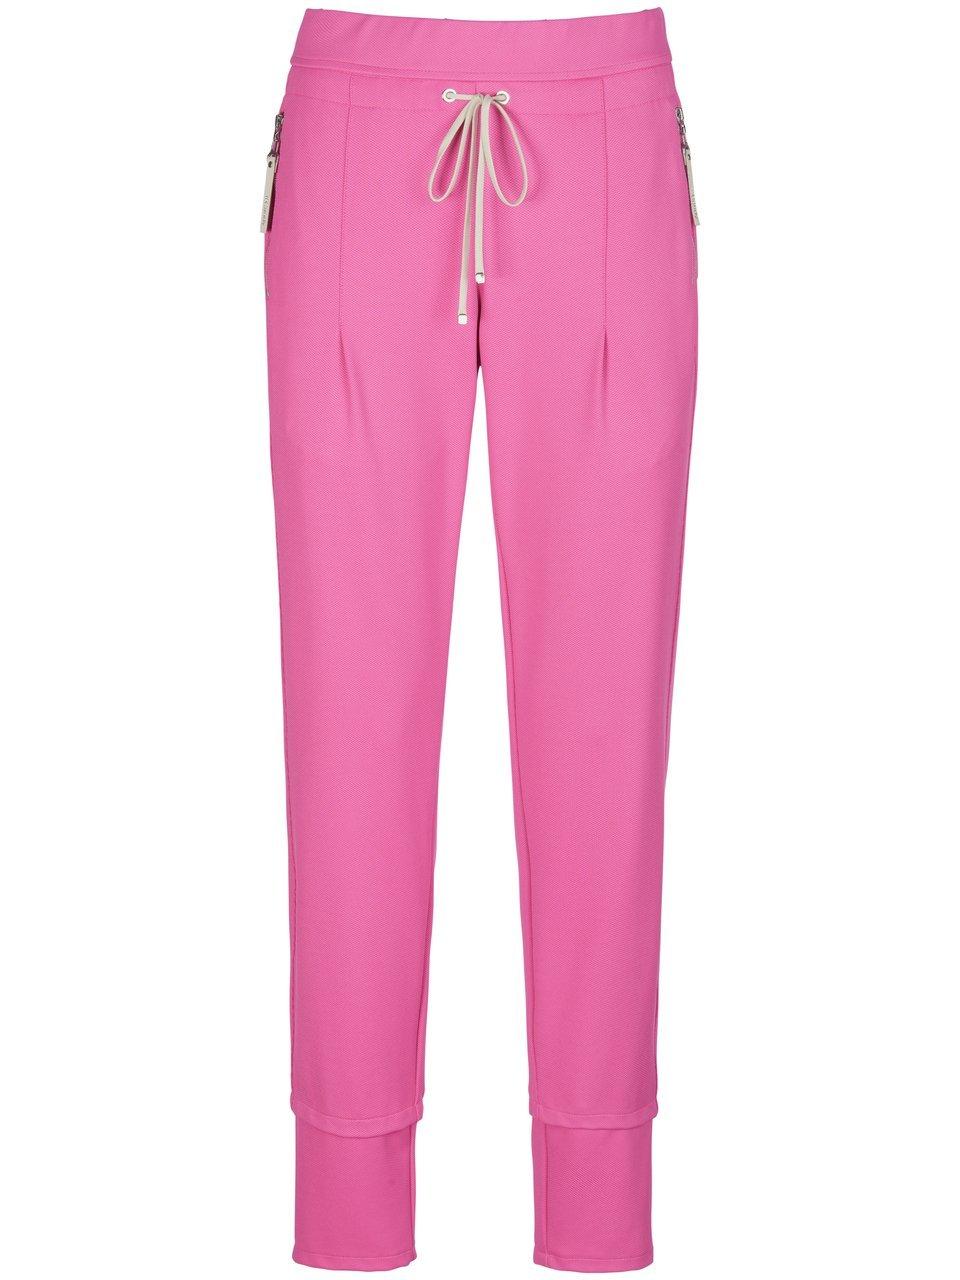 Broek in jogg-pant-stijl model Candy Van Raffaello Rossi pink